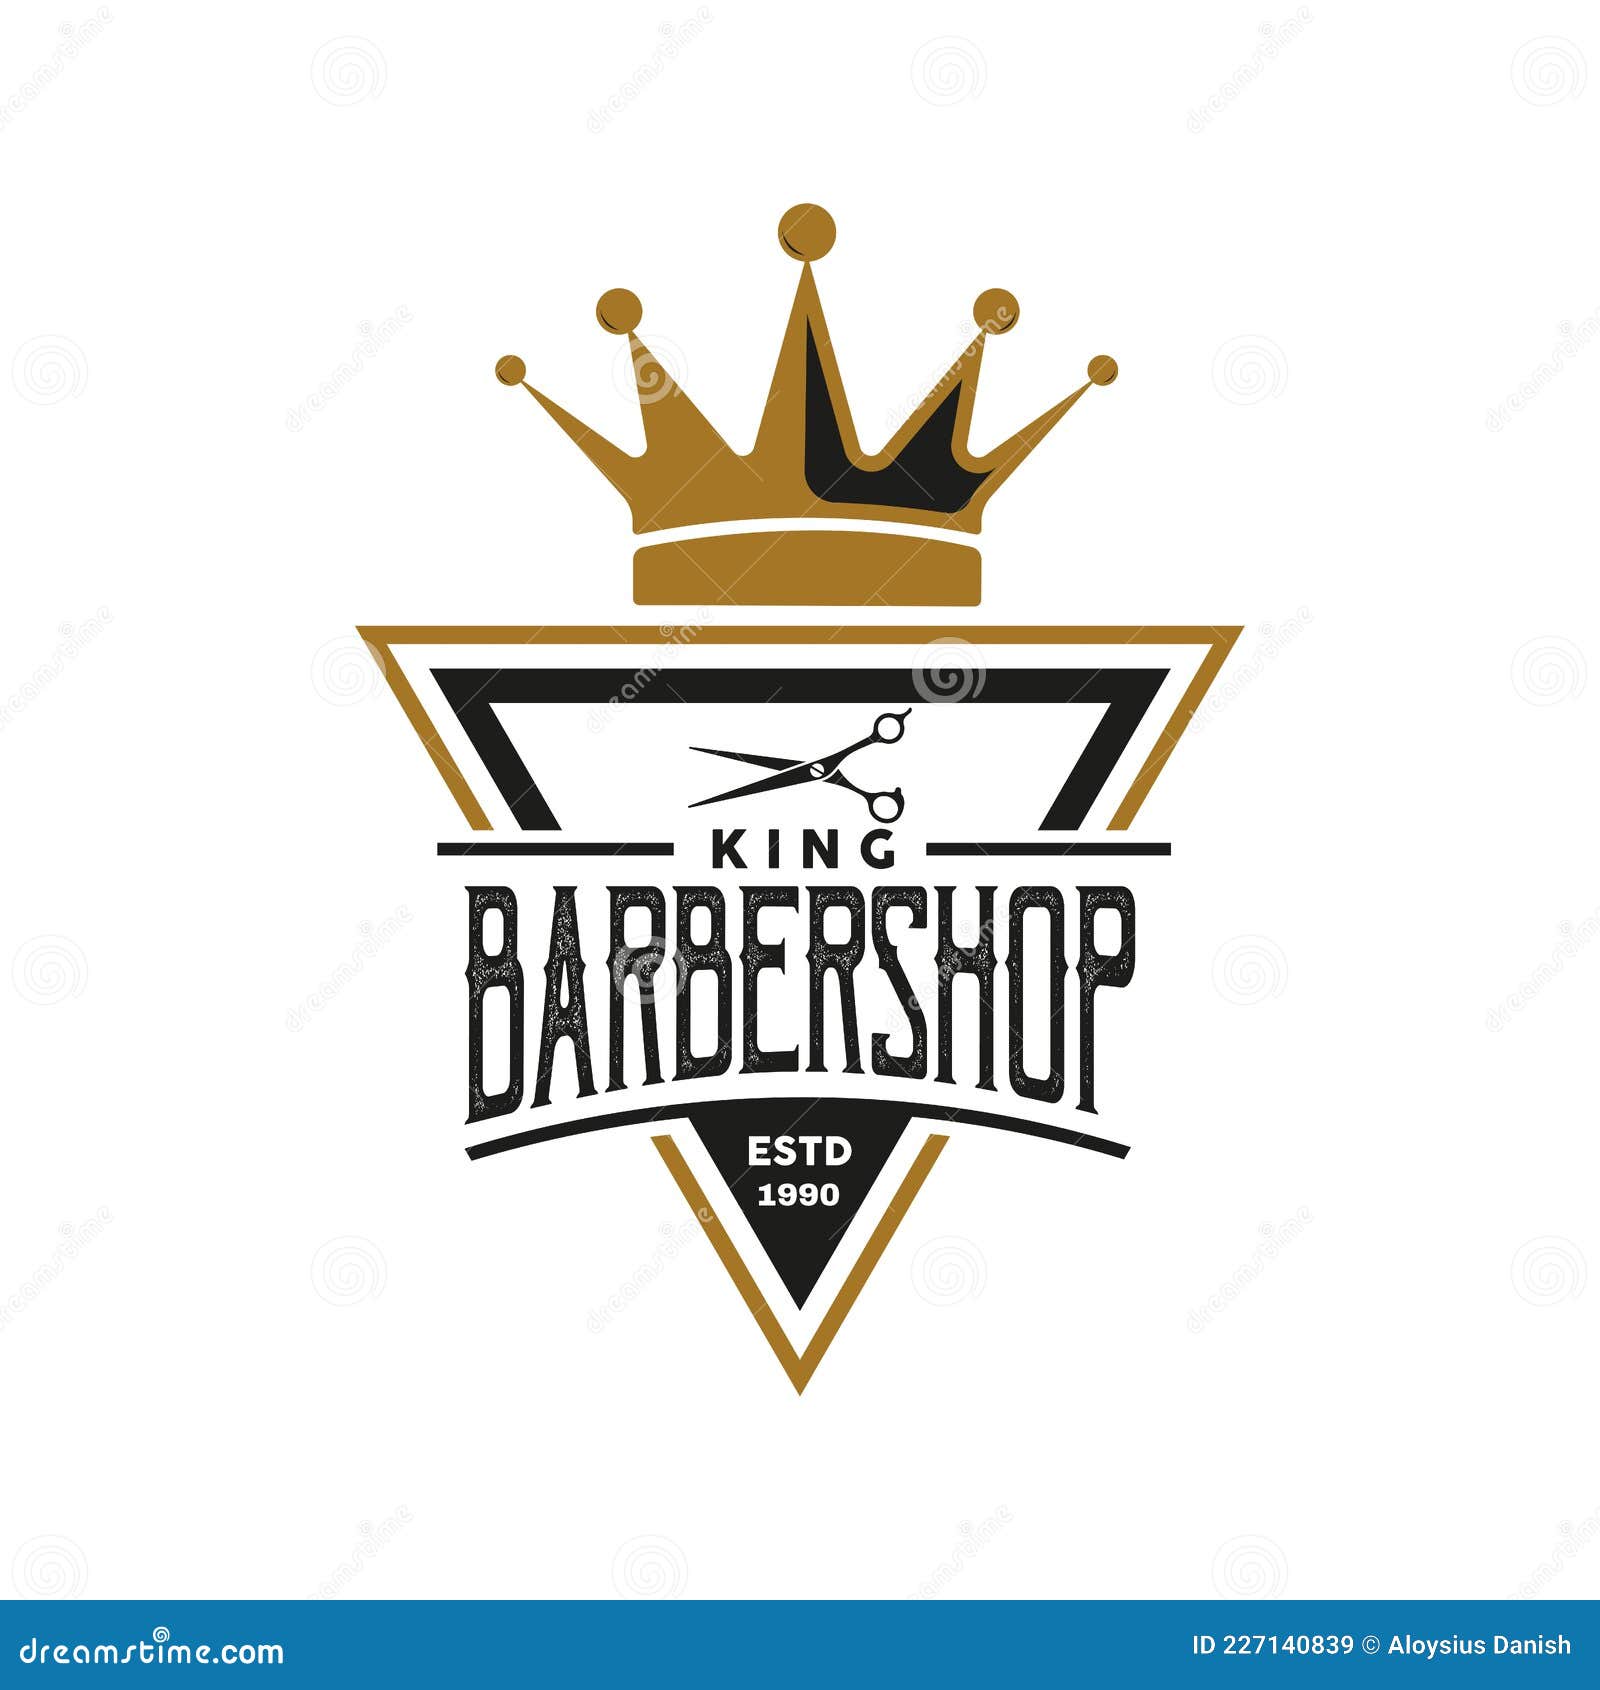 Share 160+ barber shop logo png best